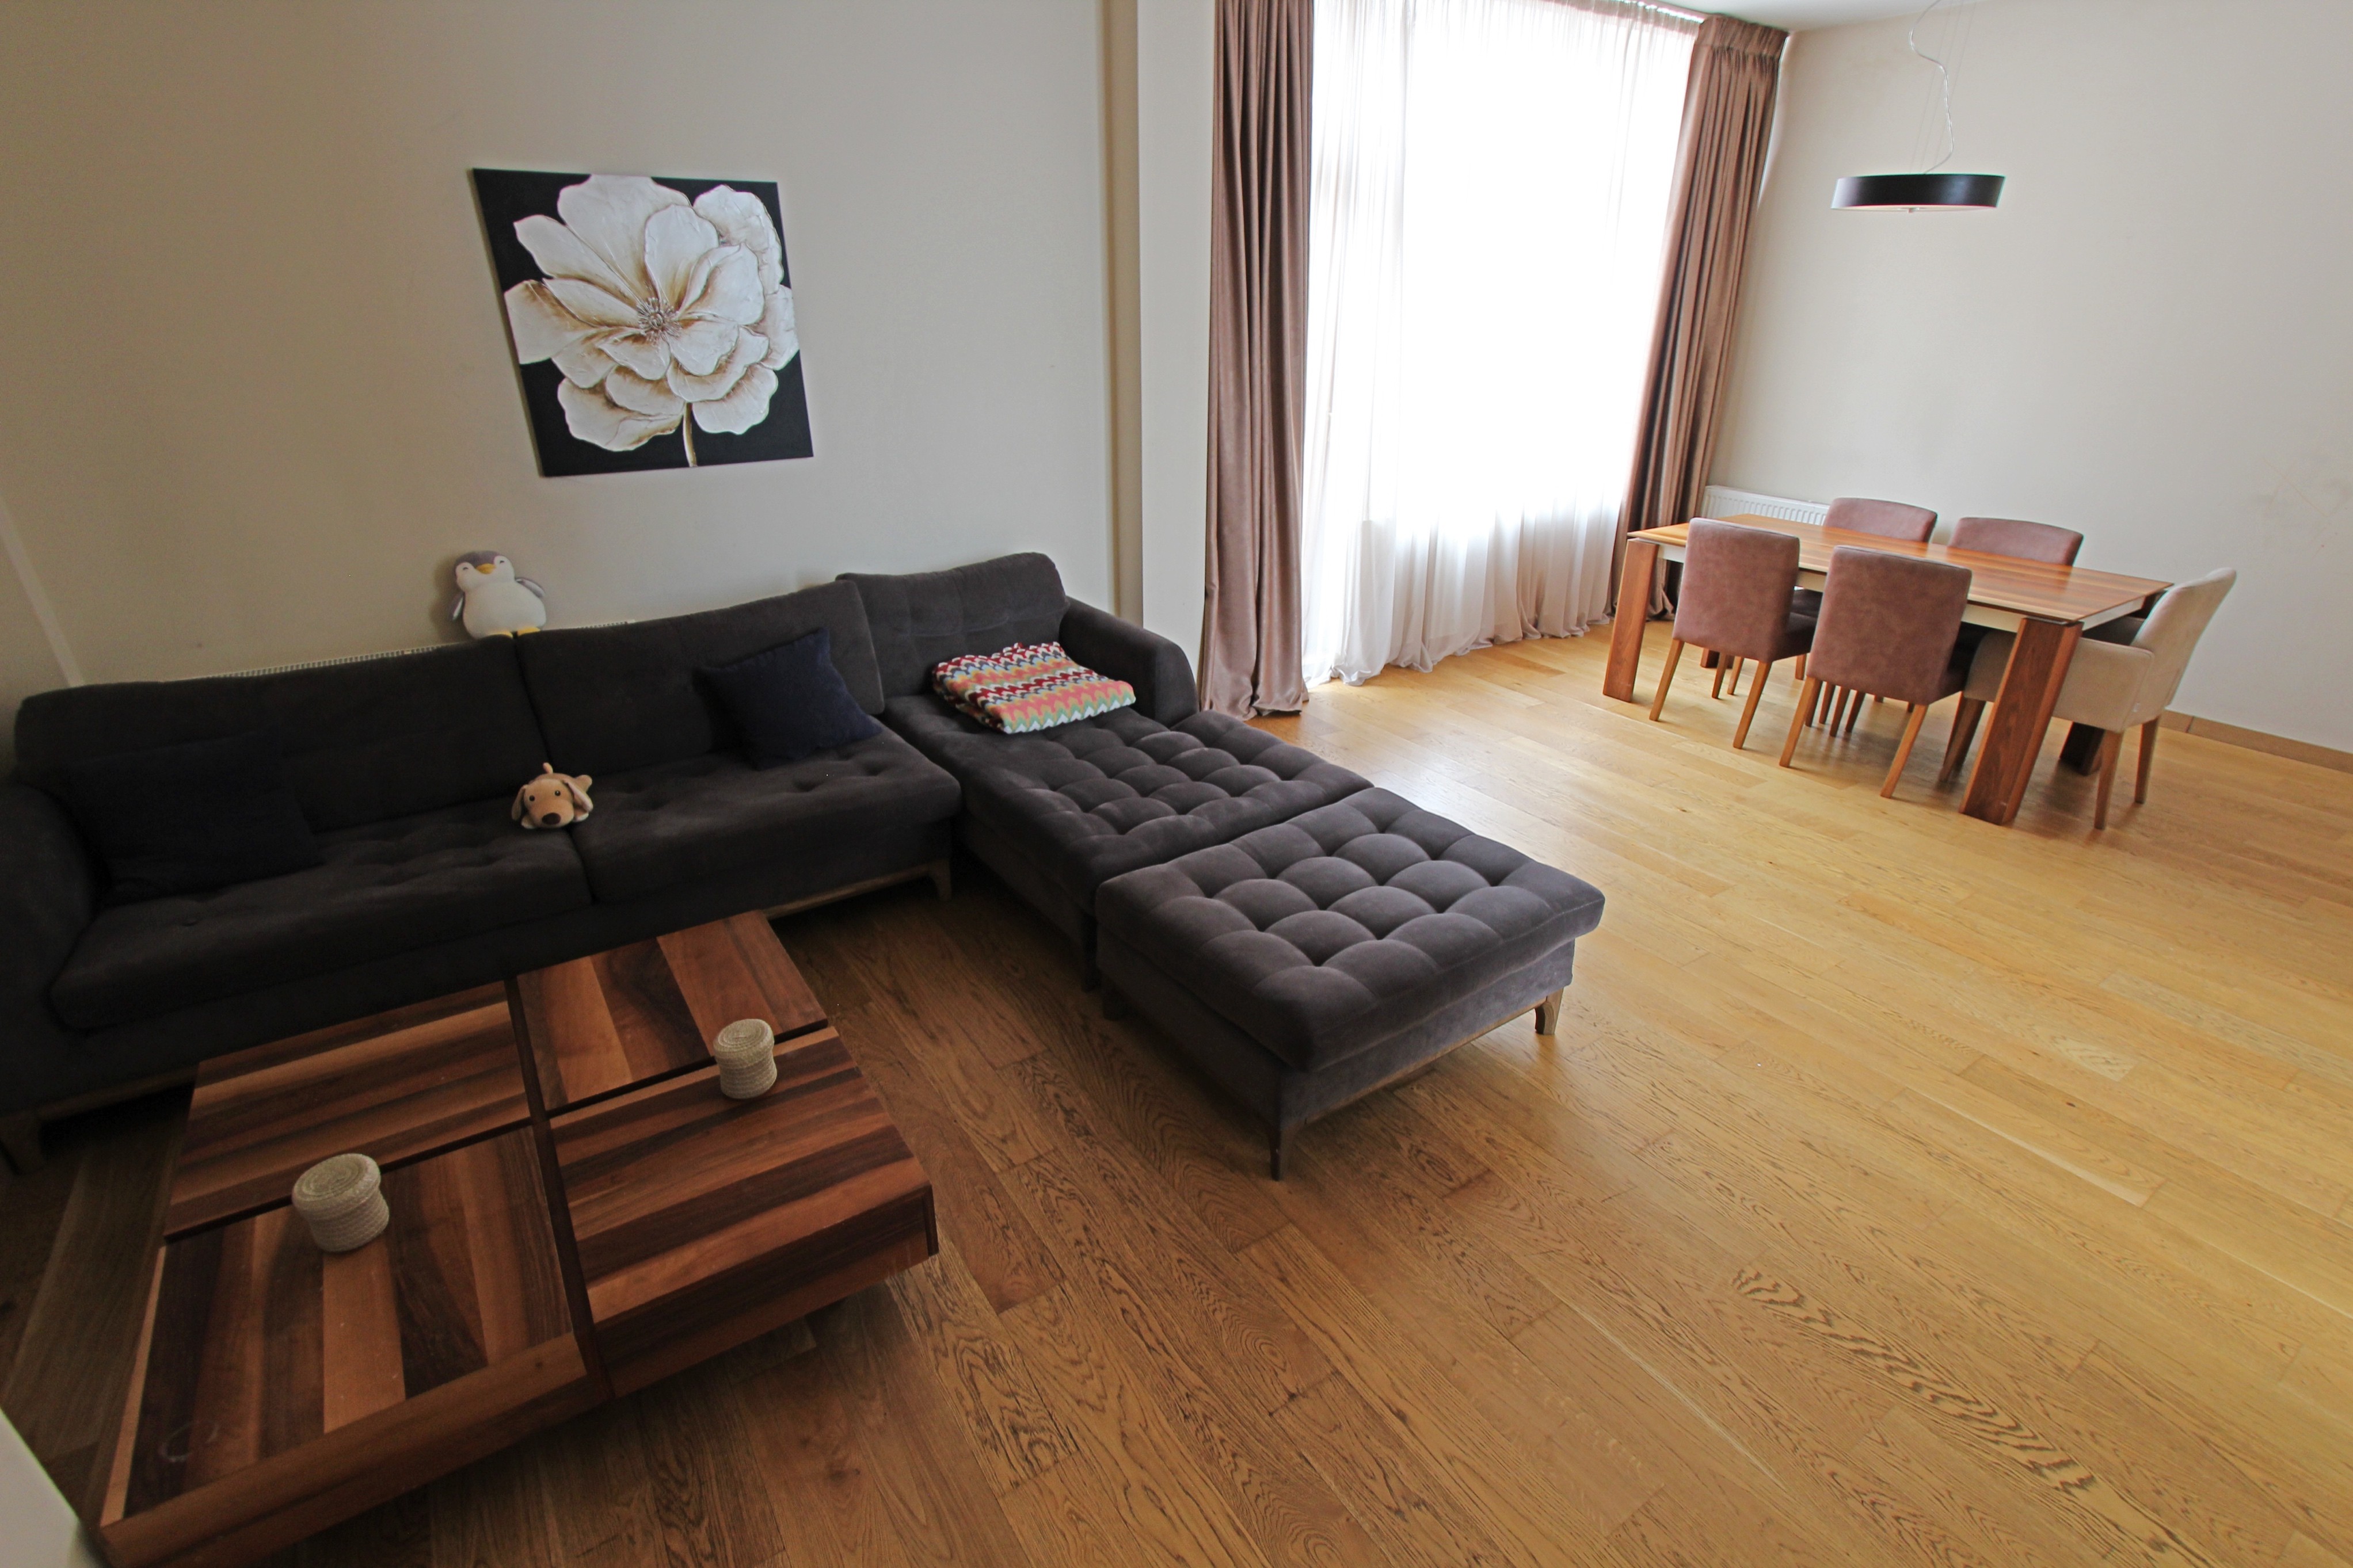 4-Room Duplex Apartment For Rent in “m2 Hippodrome”